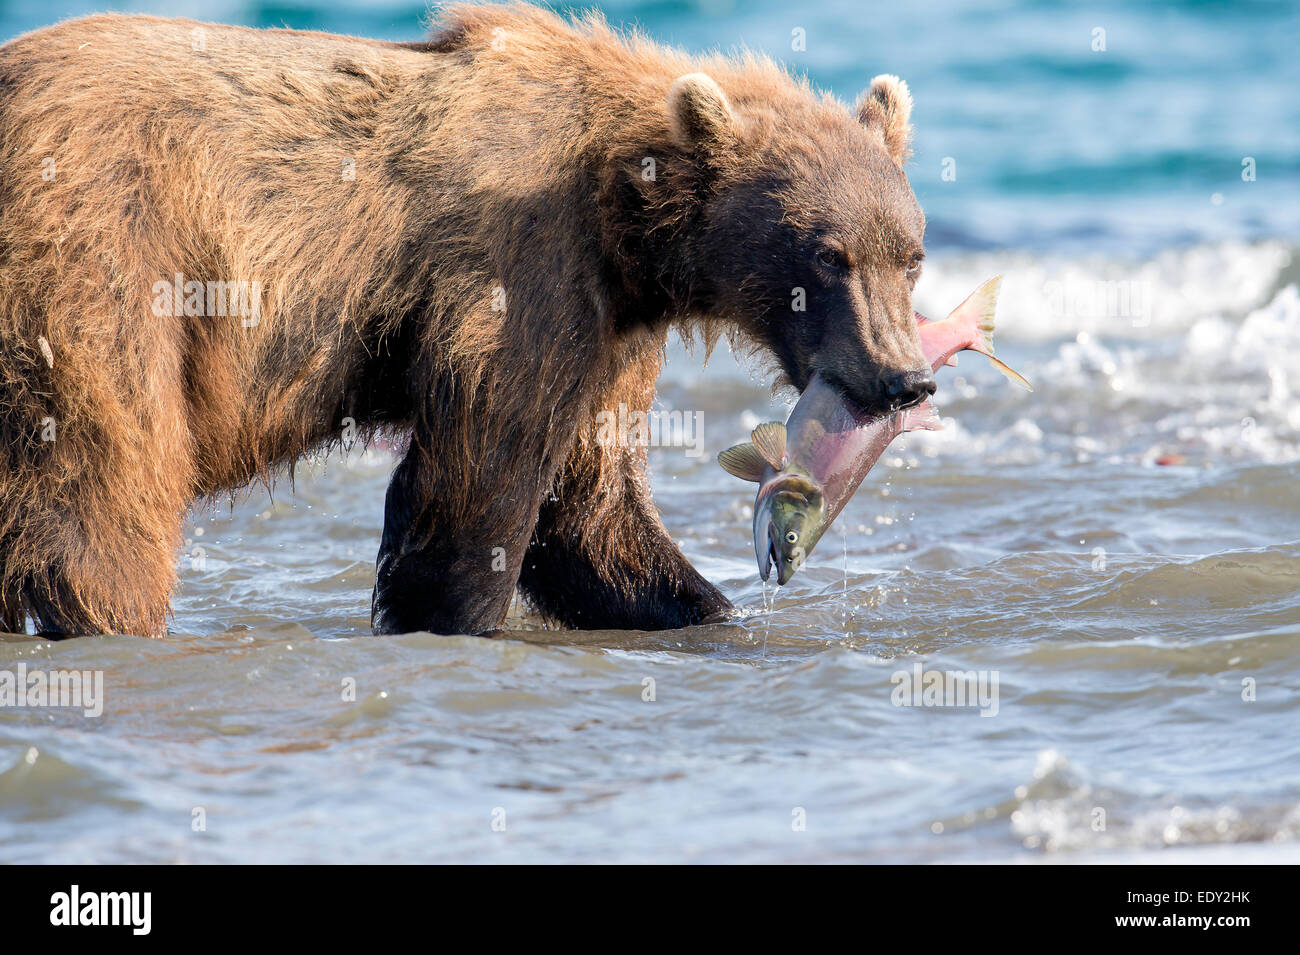 Brauner Bär mit Lachs in den Mund während der Lachs laufen Stockfoto